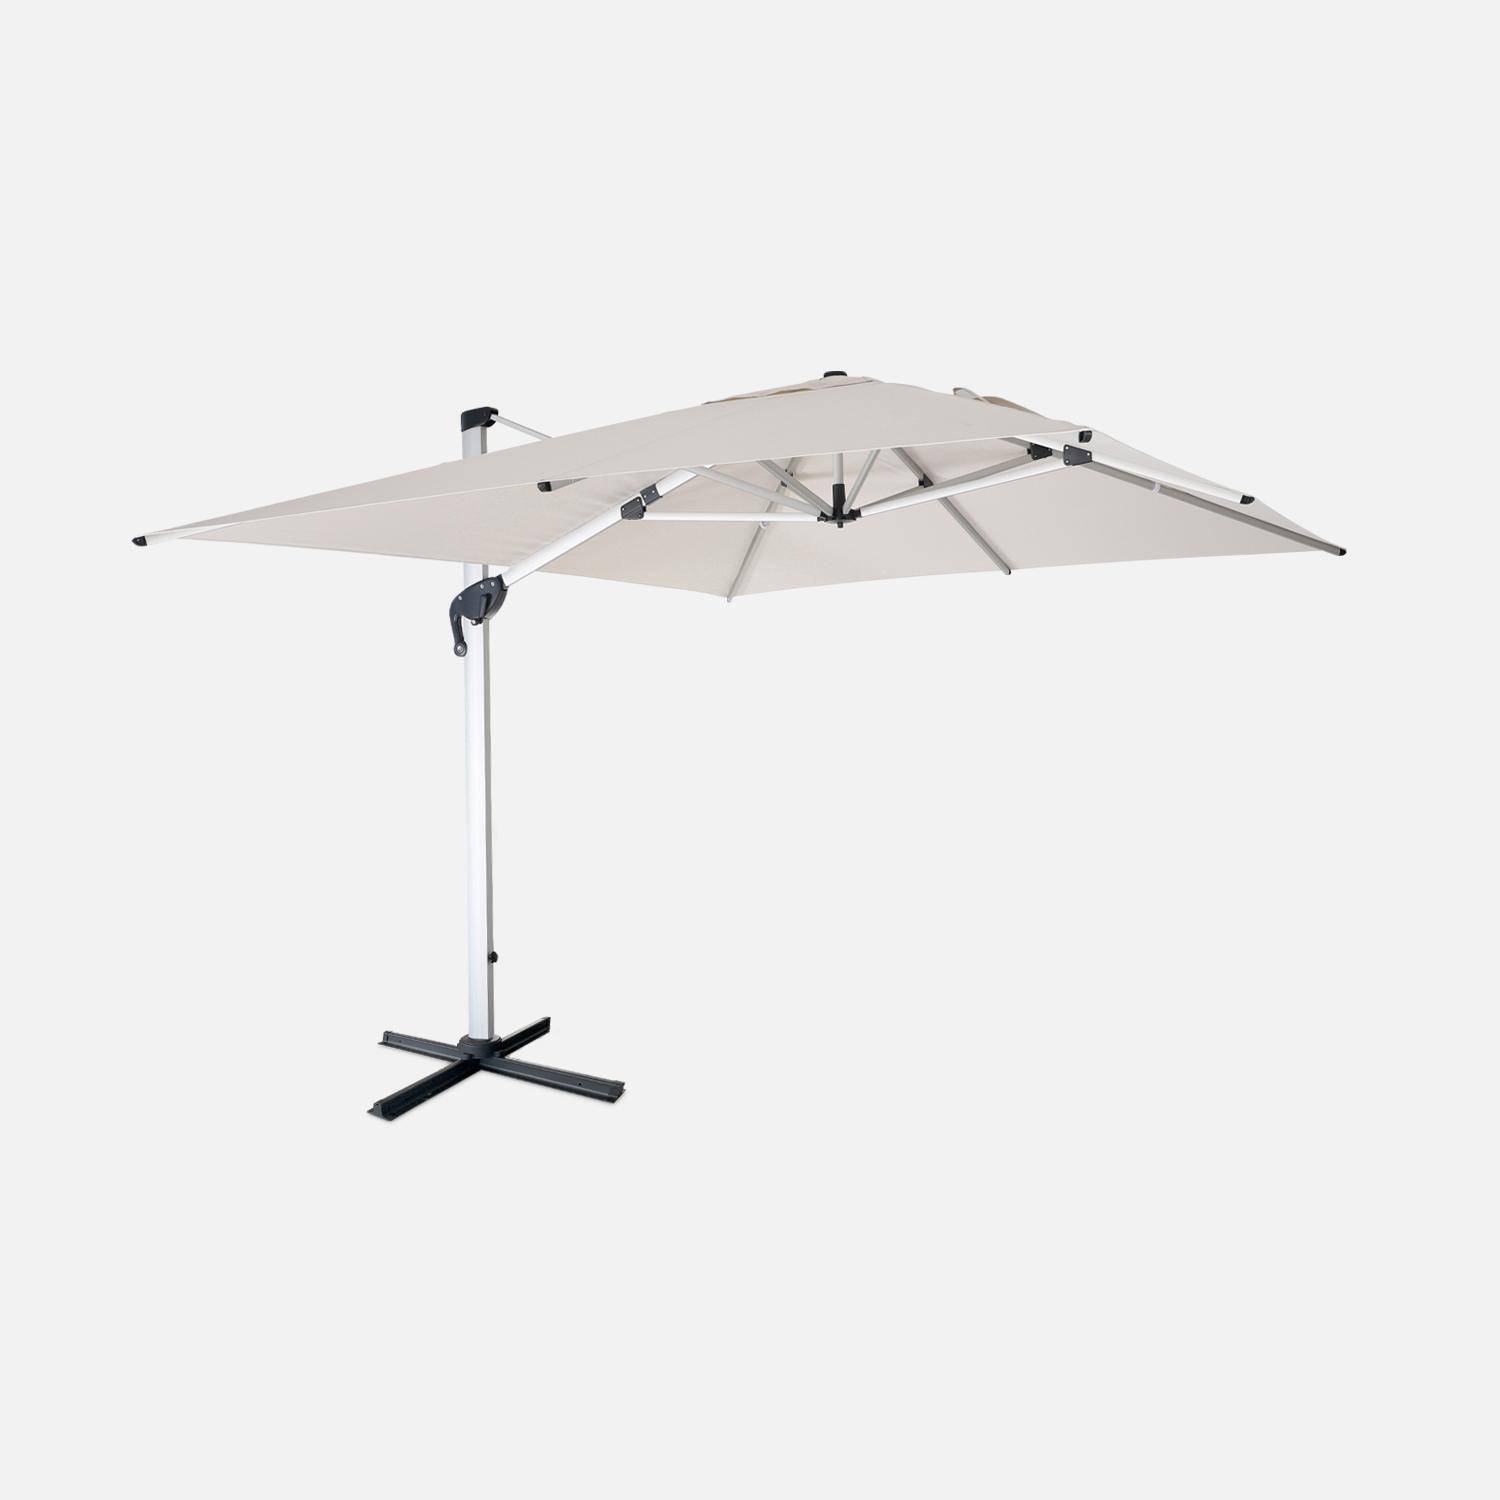 Topkwaliteit parasol, 3x4m, beige polyester doek, geanodiseerd aluminium frame, hoes inbegrepen,sweeek,Photo1